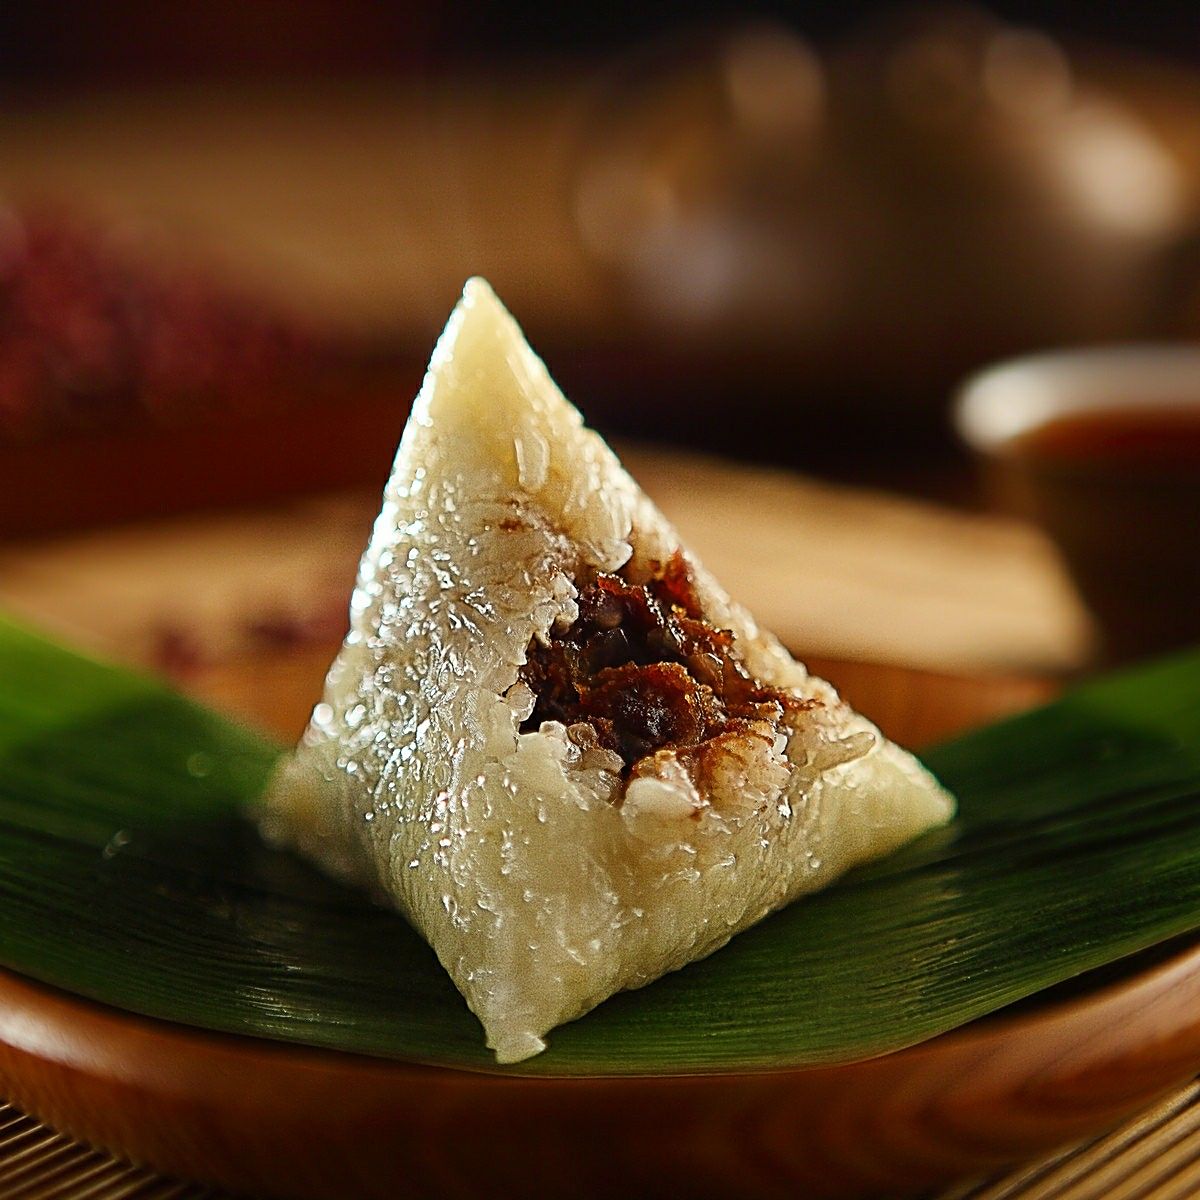 粽子,由粽叶包裹糯米蒸制而成,是中华民族传统节庆食物之一